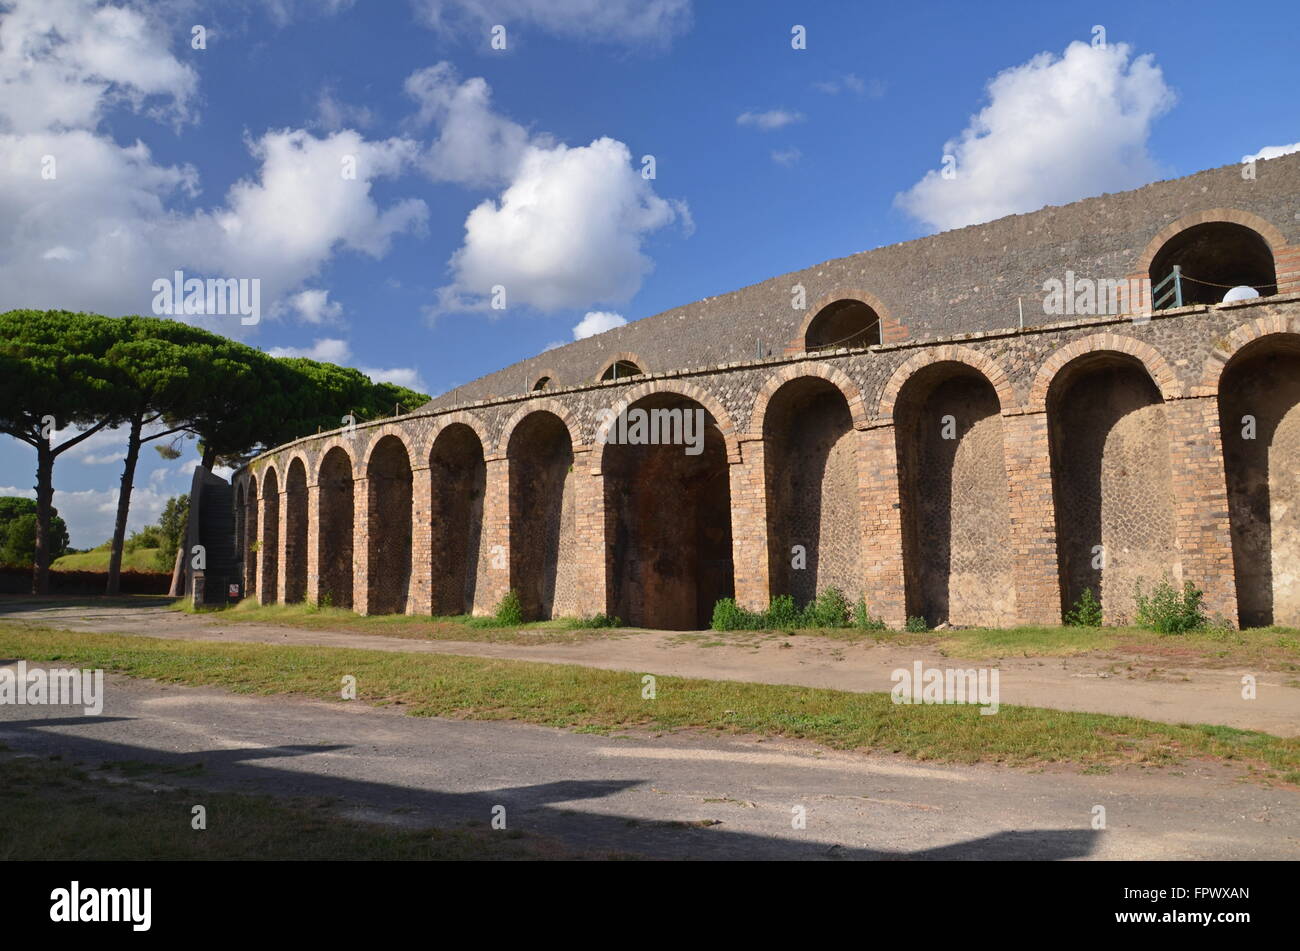 Berühmten antiken Ruinen von Pompeji, Italien. Pompeji wurde zerstört und nach dem Vesuv-Ausbruch im Jahr 79 n. Chr. mit Asche und Bimsstein begraben. Stockfoto